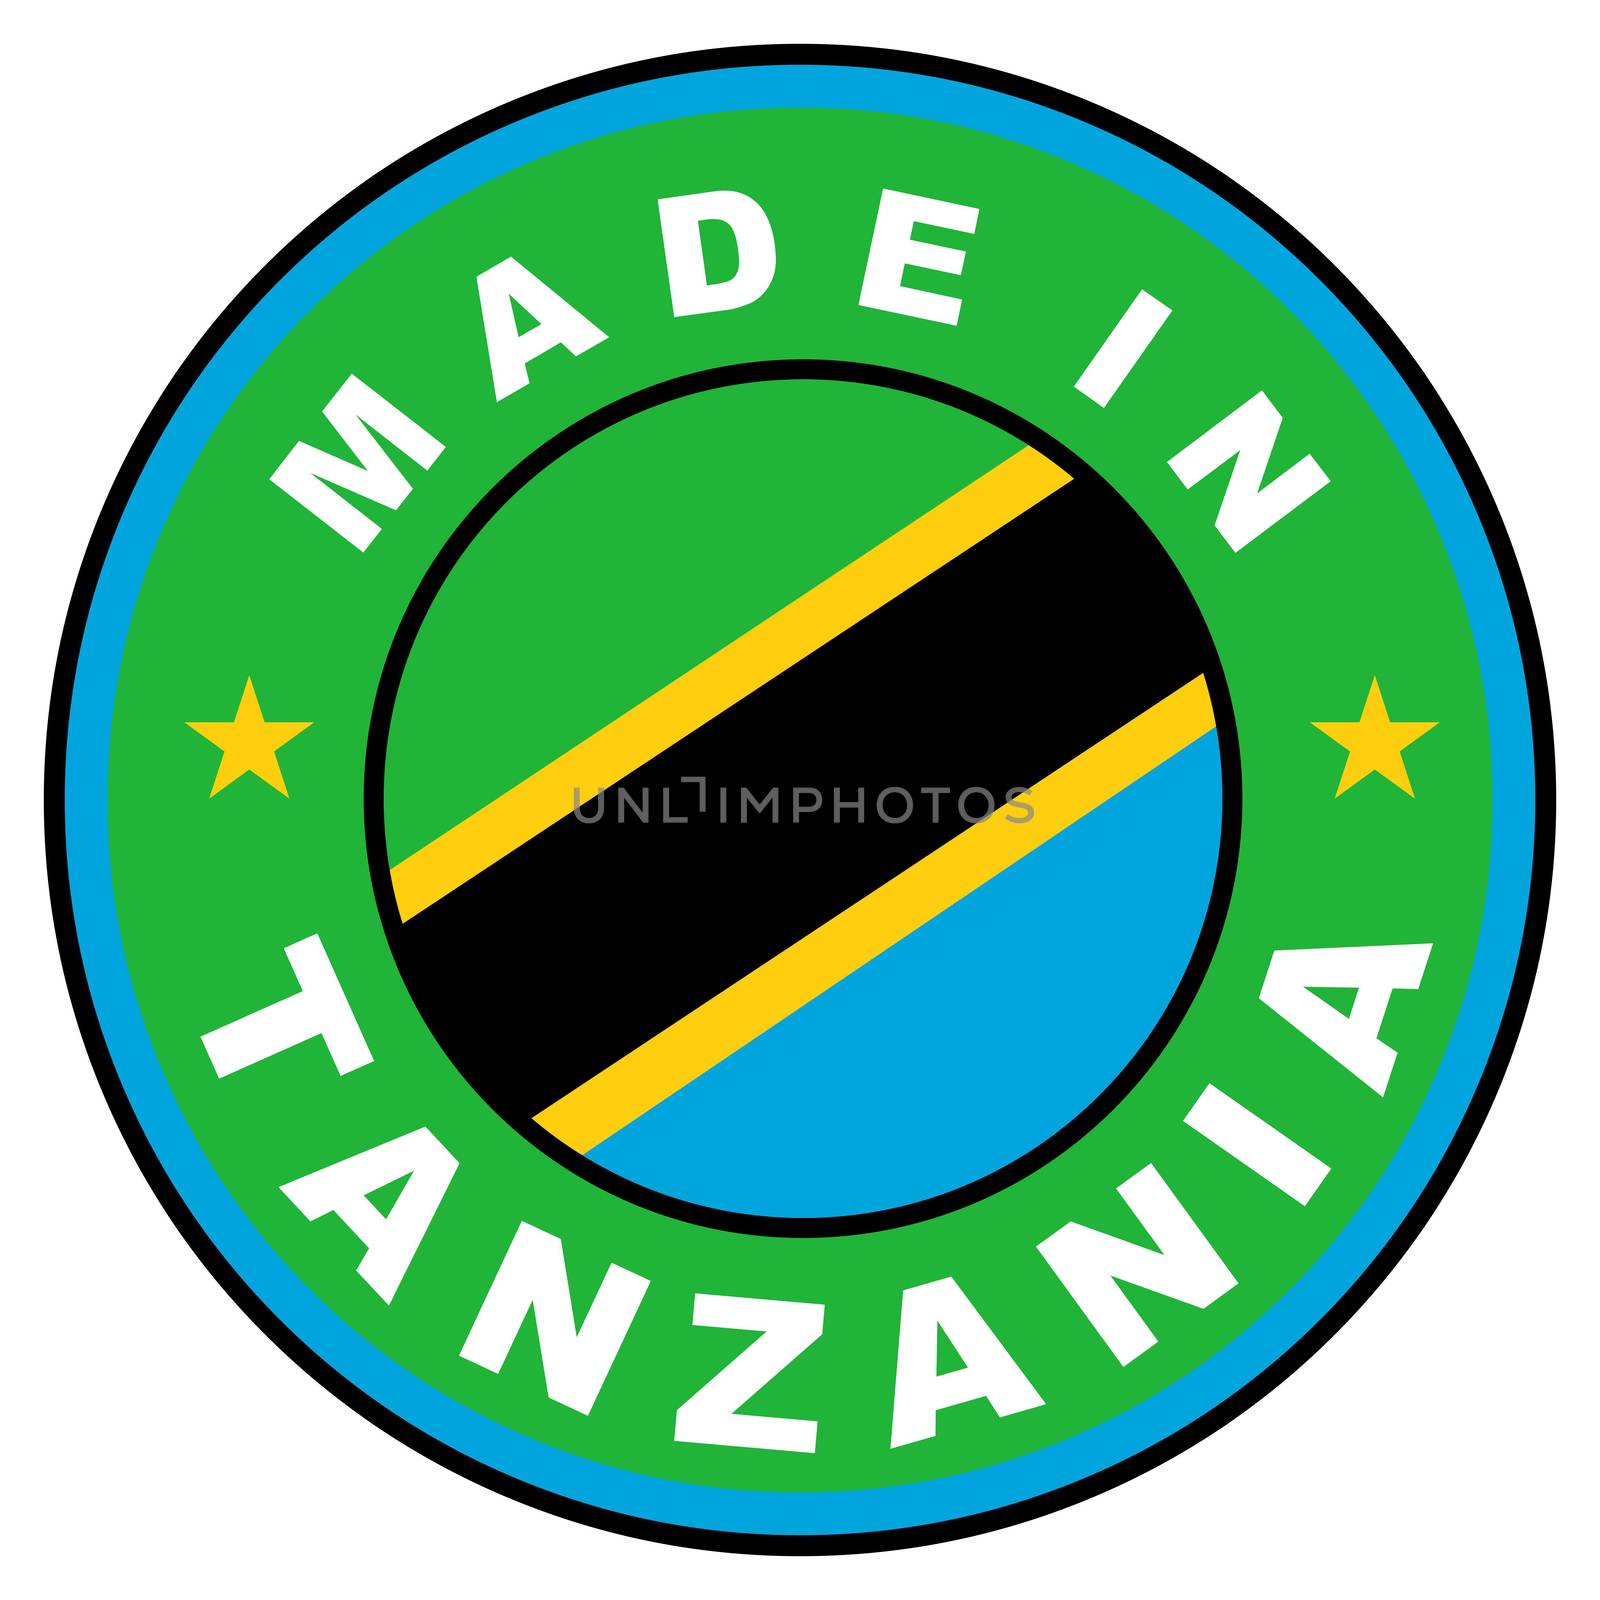 made in tanzania by tony4urban